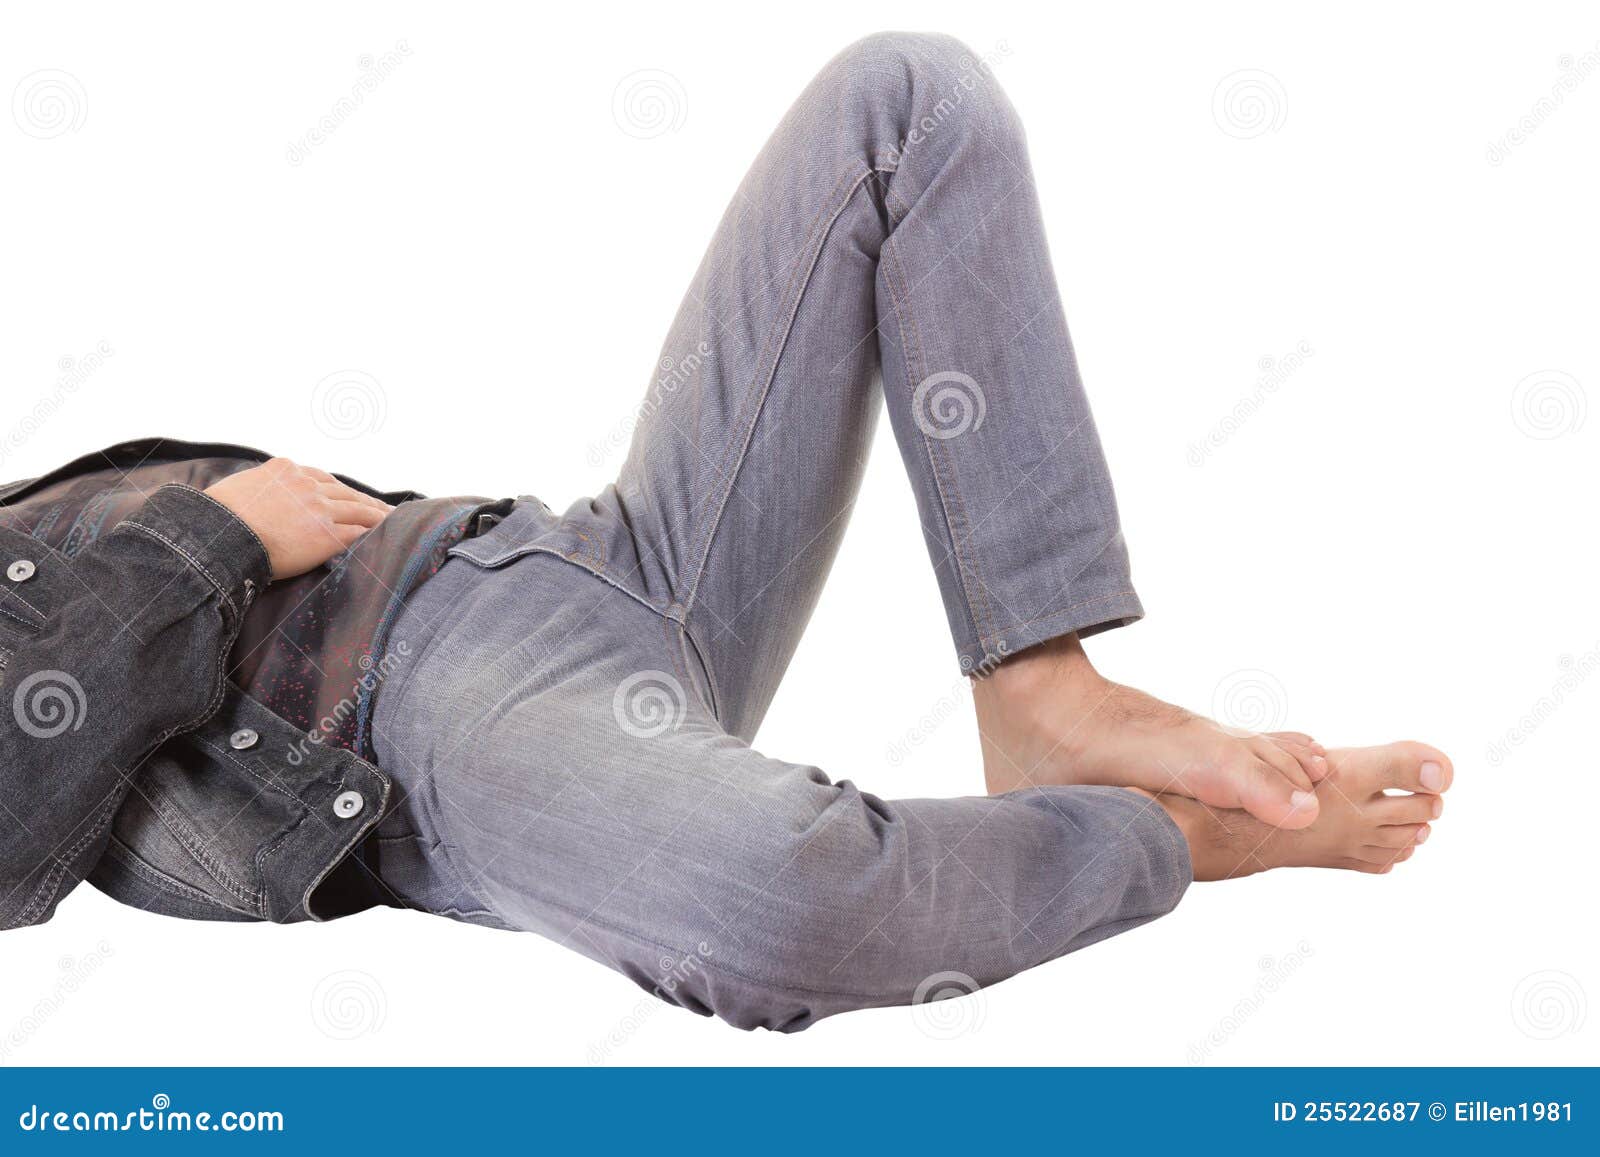 Мужчина лежит нога на ногу